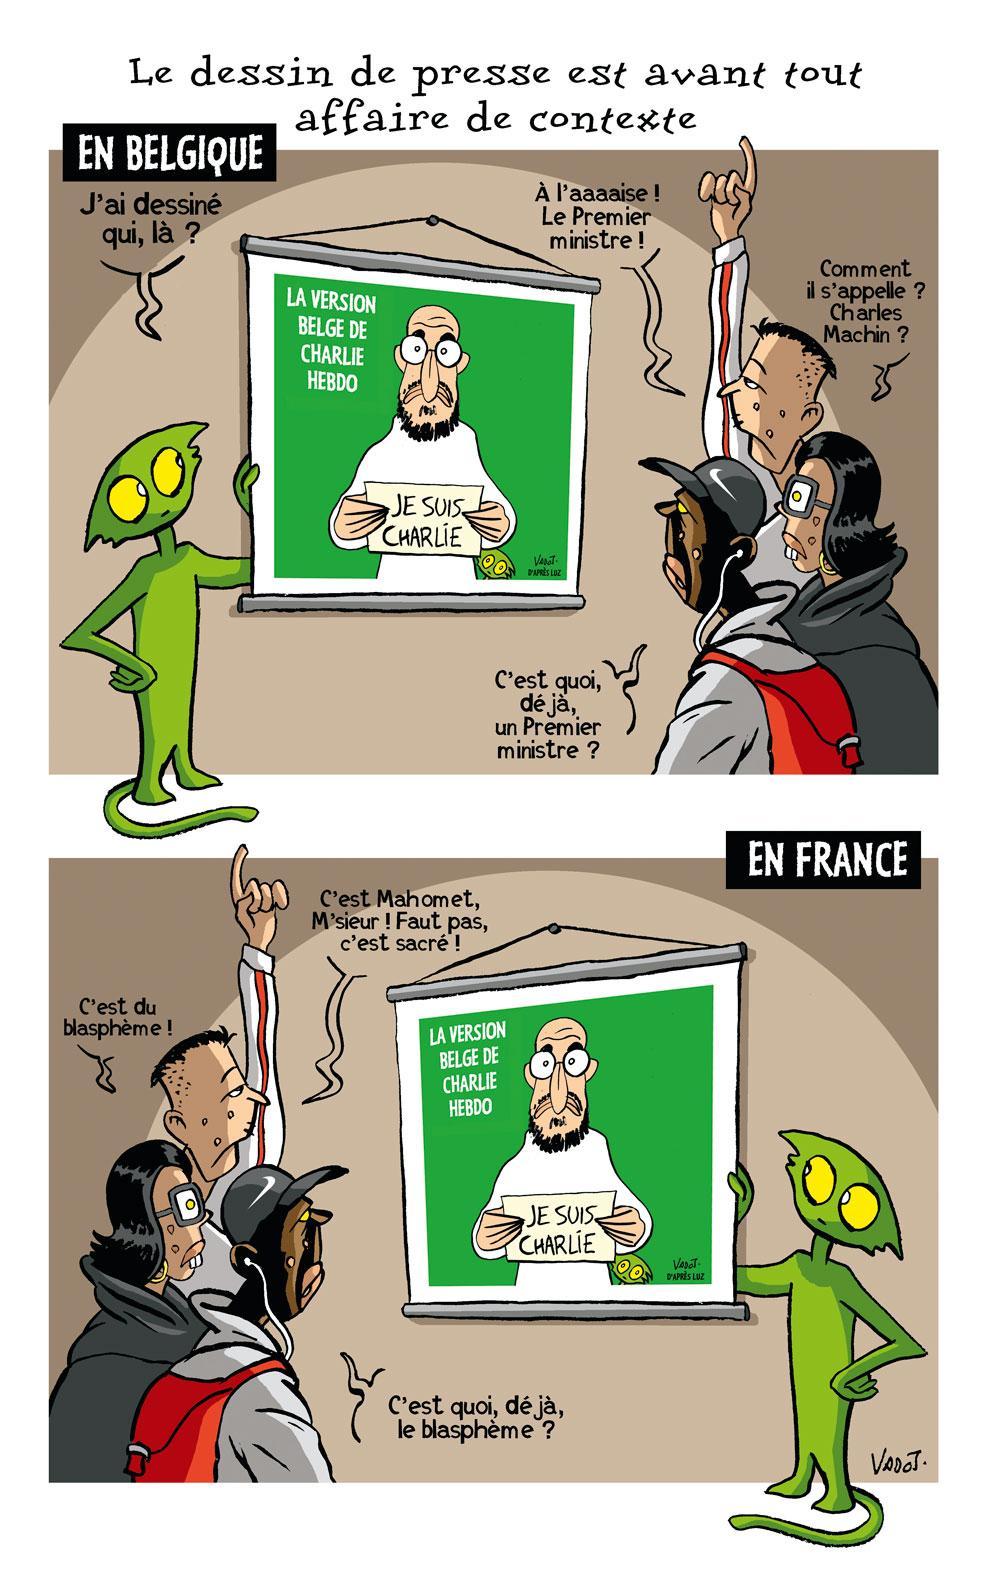 Quand le caricaturiste Nicolas Vadot parcourt les classes pour défendre la liberté d'expression